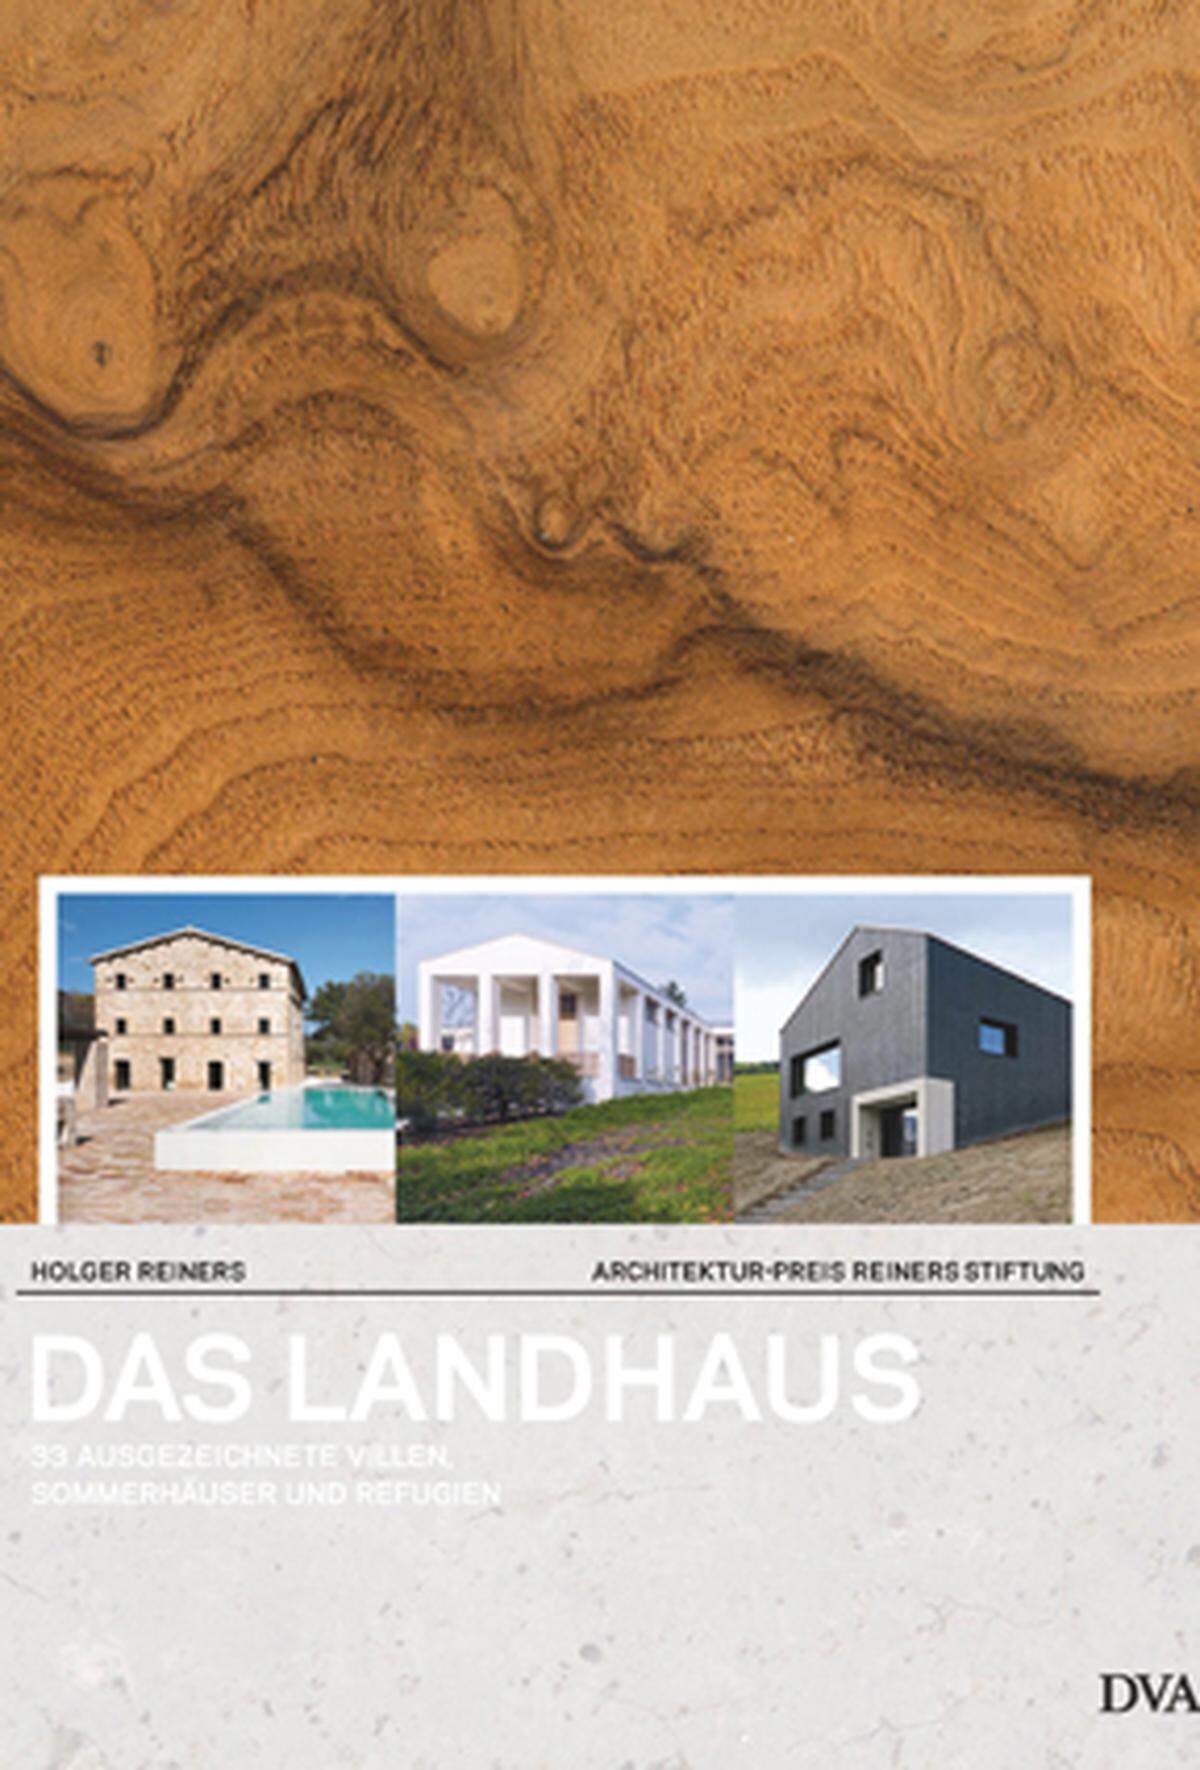 Der Autor, Holger Reiners, ist freiberuflicher Planer in Hamburg und beschreibt im Buch "Das Landhaus" 33 ausgezeichnete Villen, Sommerhäuser und Refugien. www.randomhouse.de